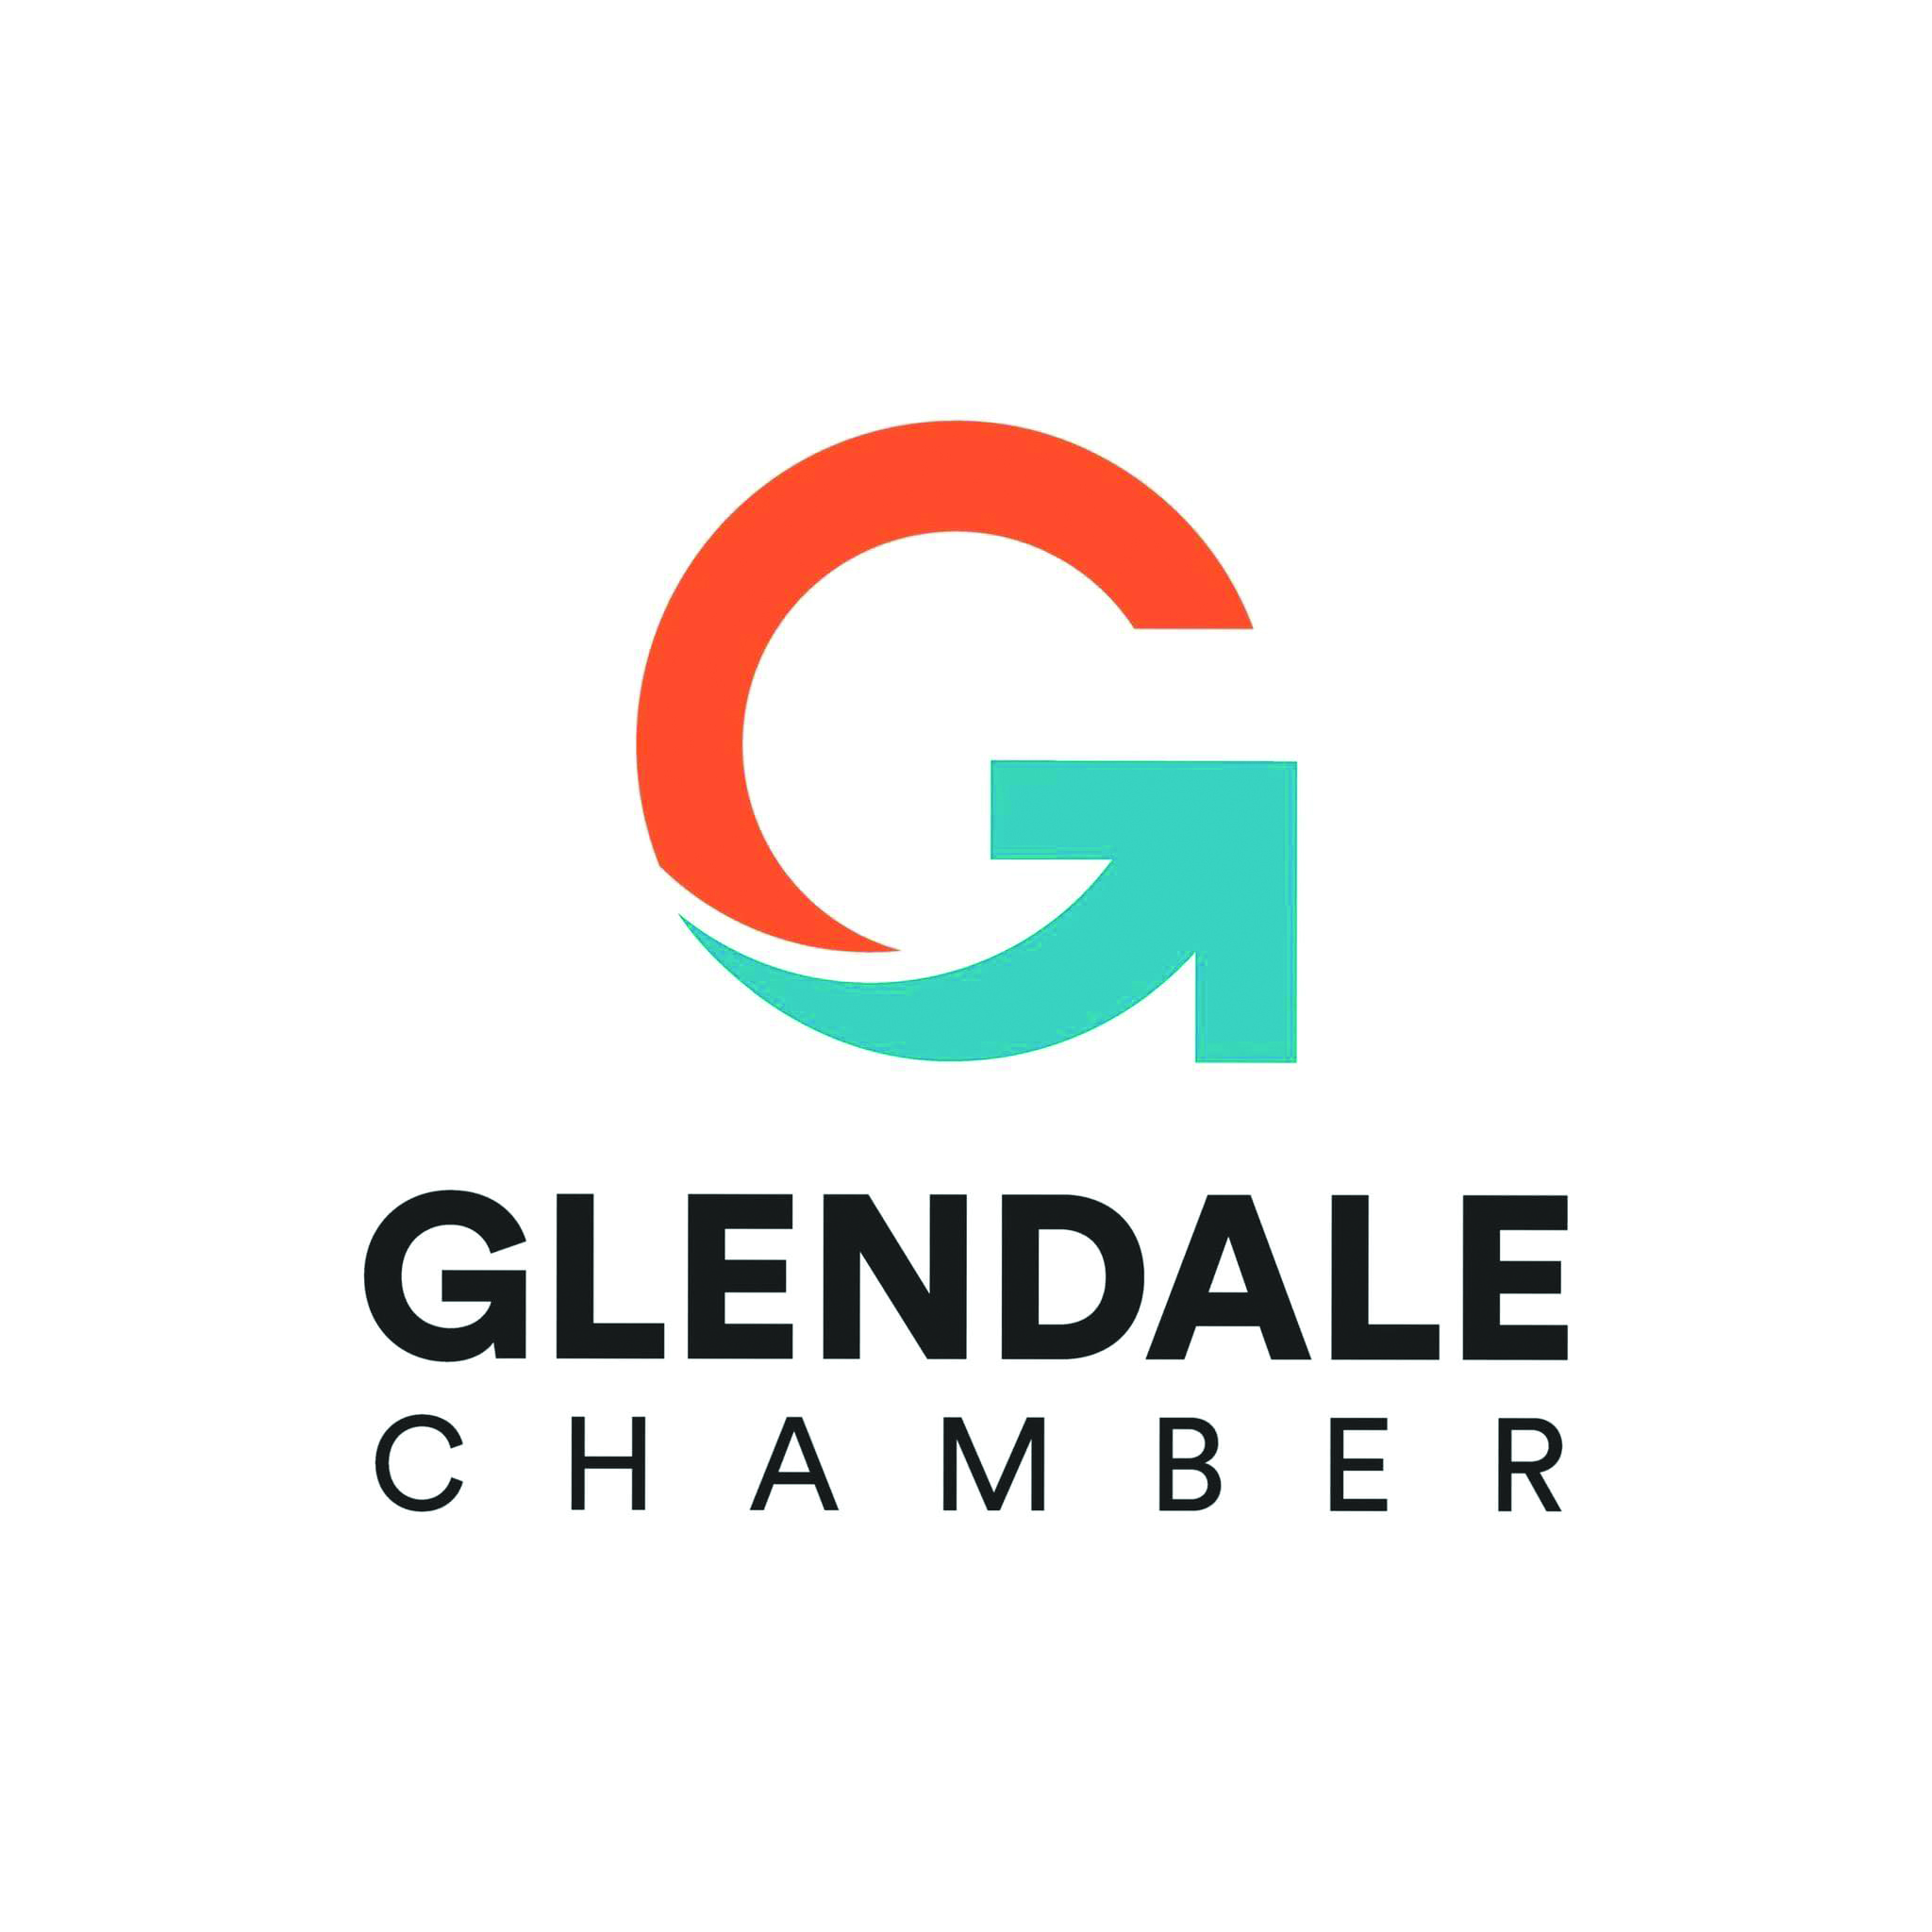 Glendale Chamber of Commerce 